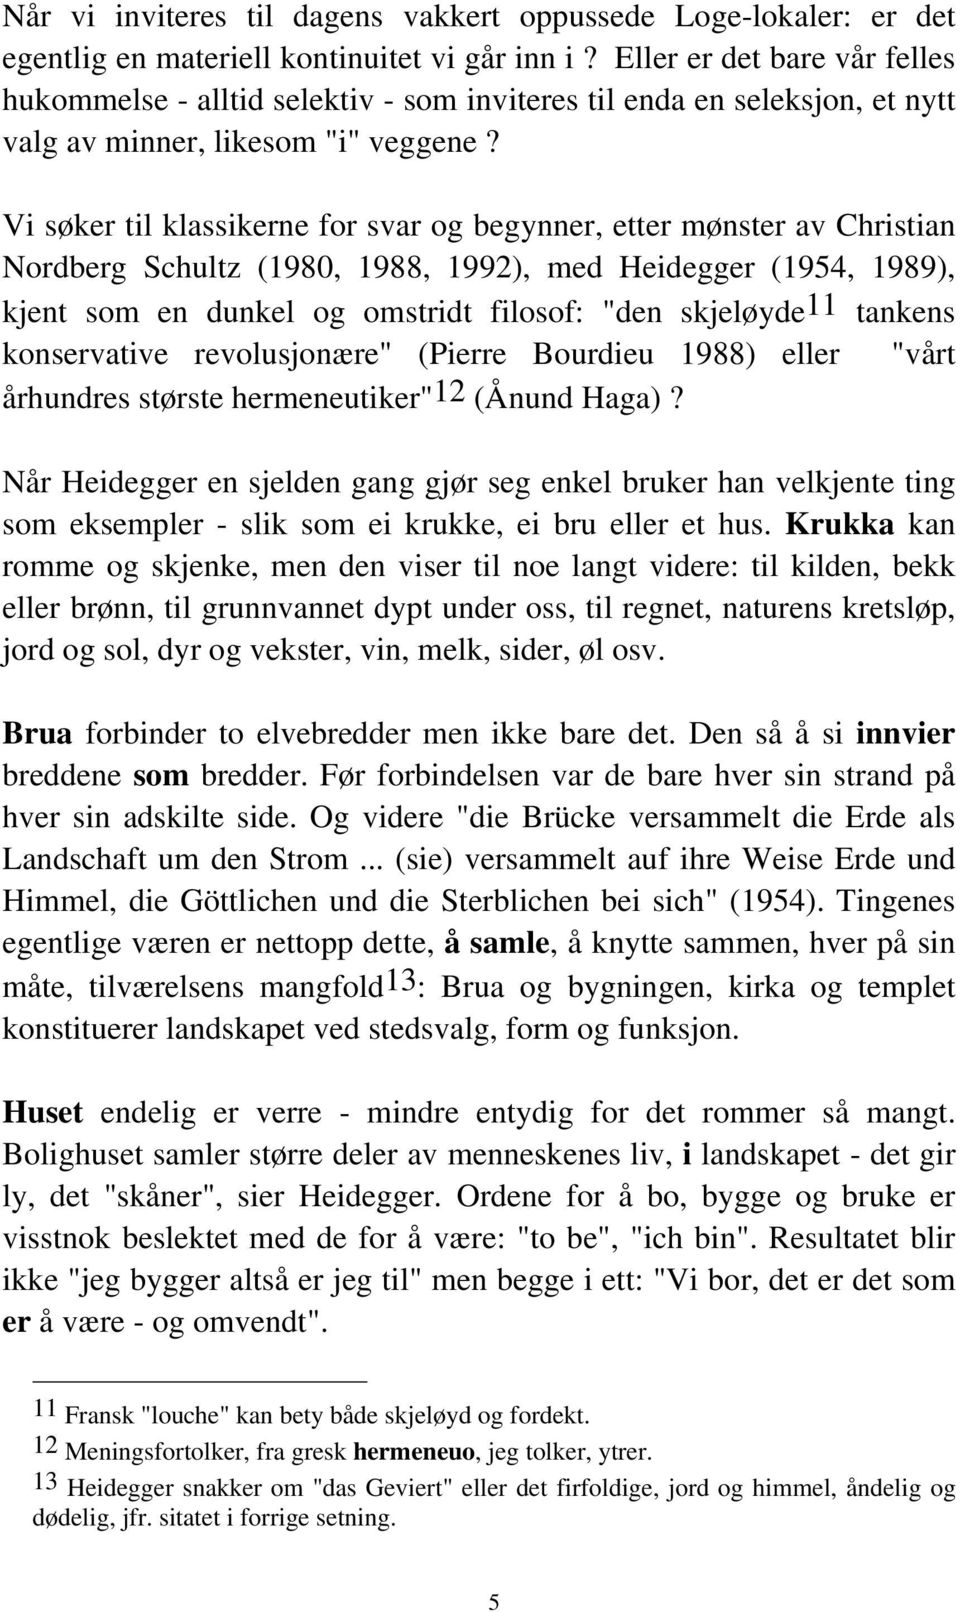 Vi søker til klassikerne for svar og begynner, etter mønster av Christian Nordberg Schultz (1980, 1988, 1992), med Heidegger (1954, 1989), kjent som en dunkel og omstridt filosof: "den skjeløyde11